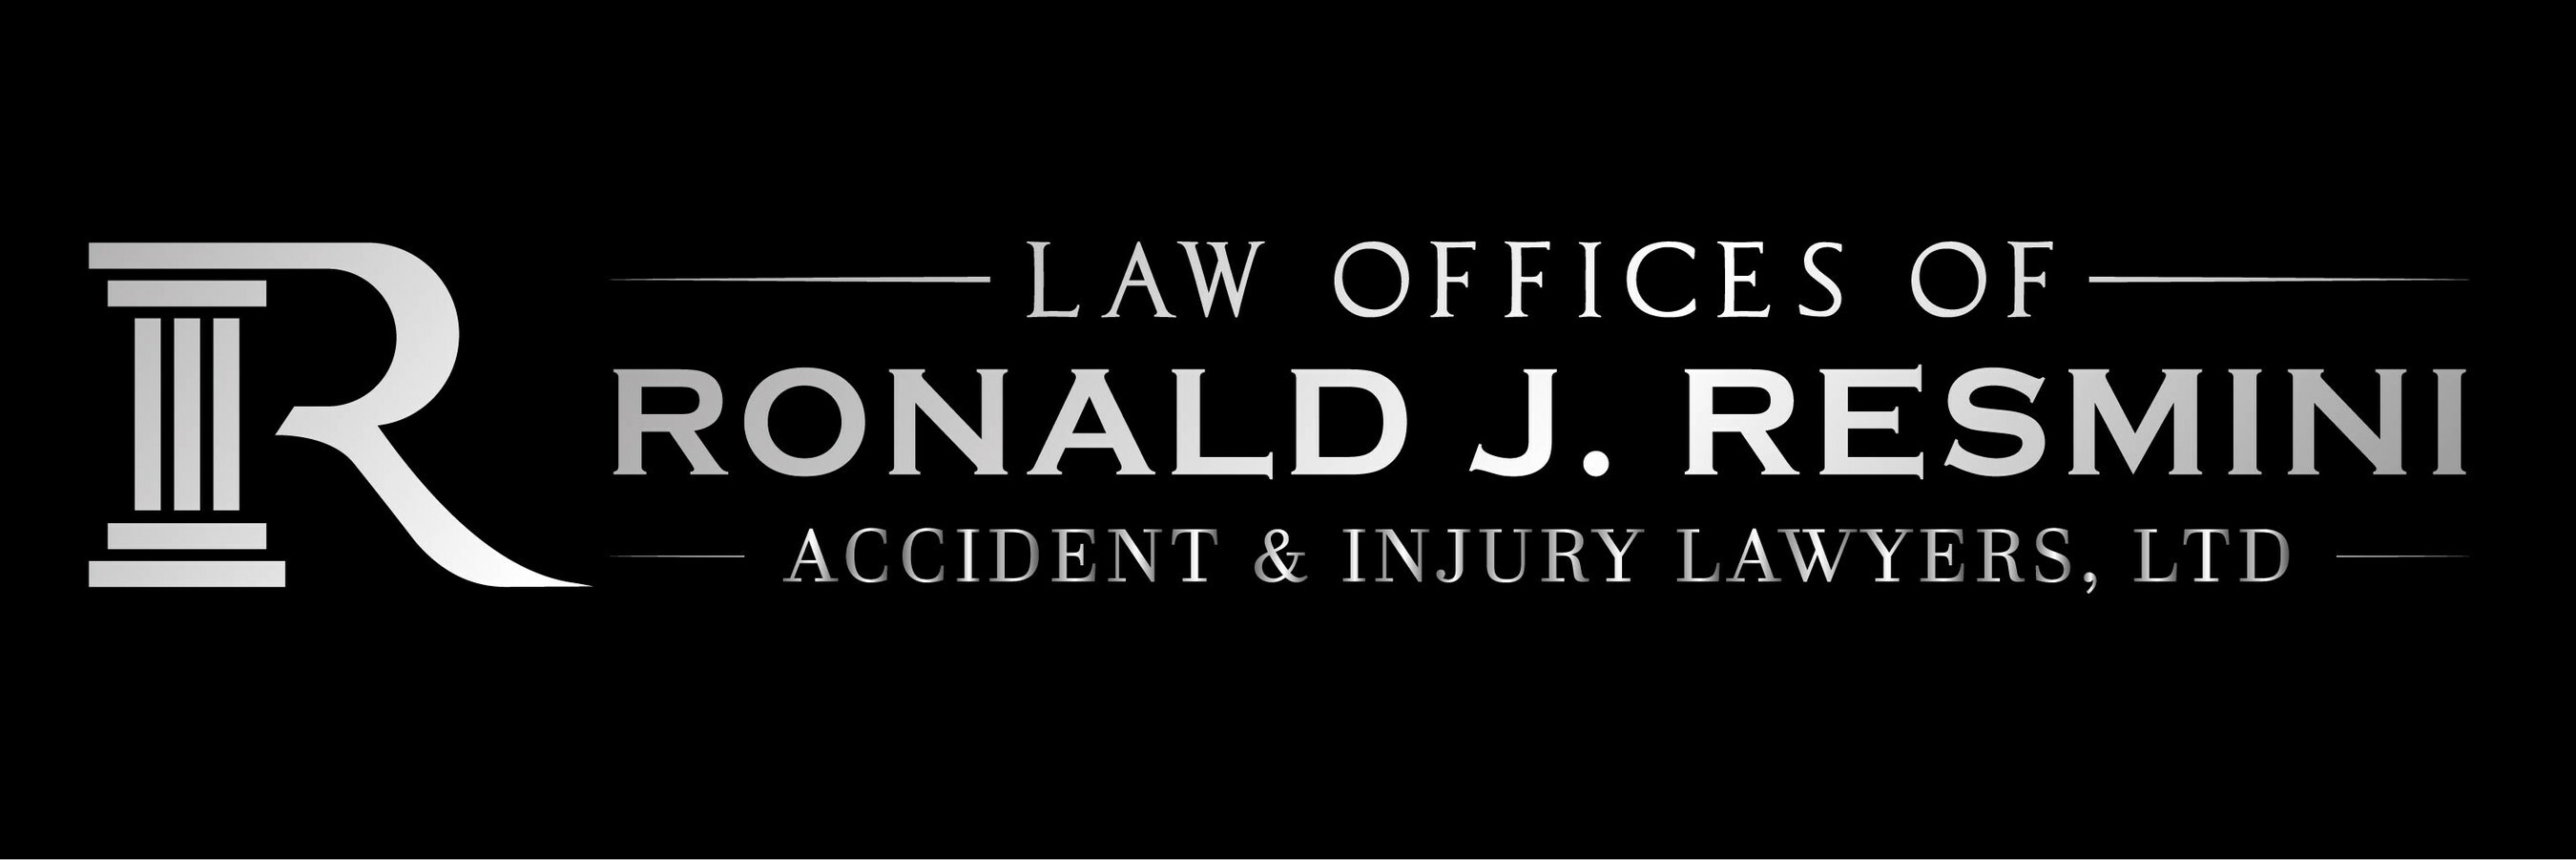 Law Offices of Ronald J Resmini Logo.jpg